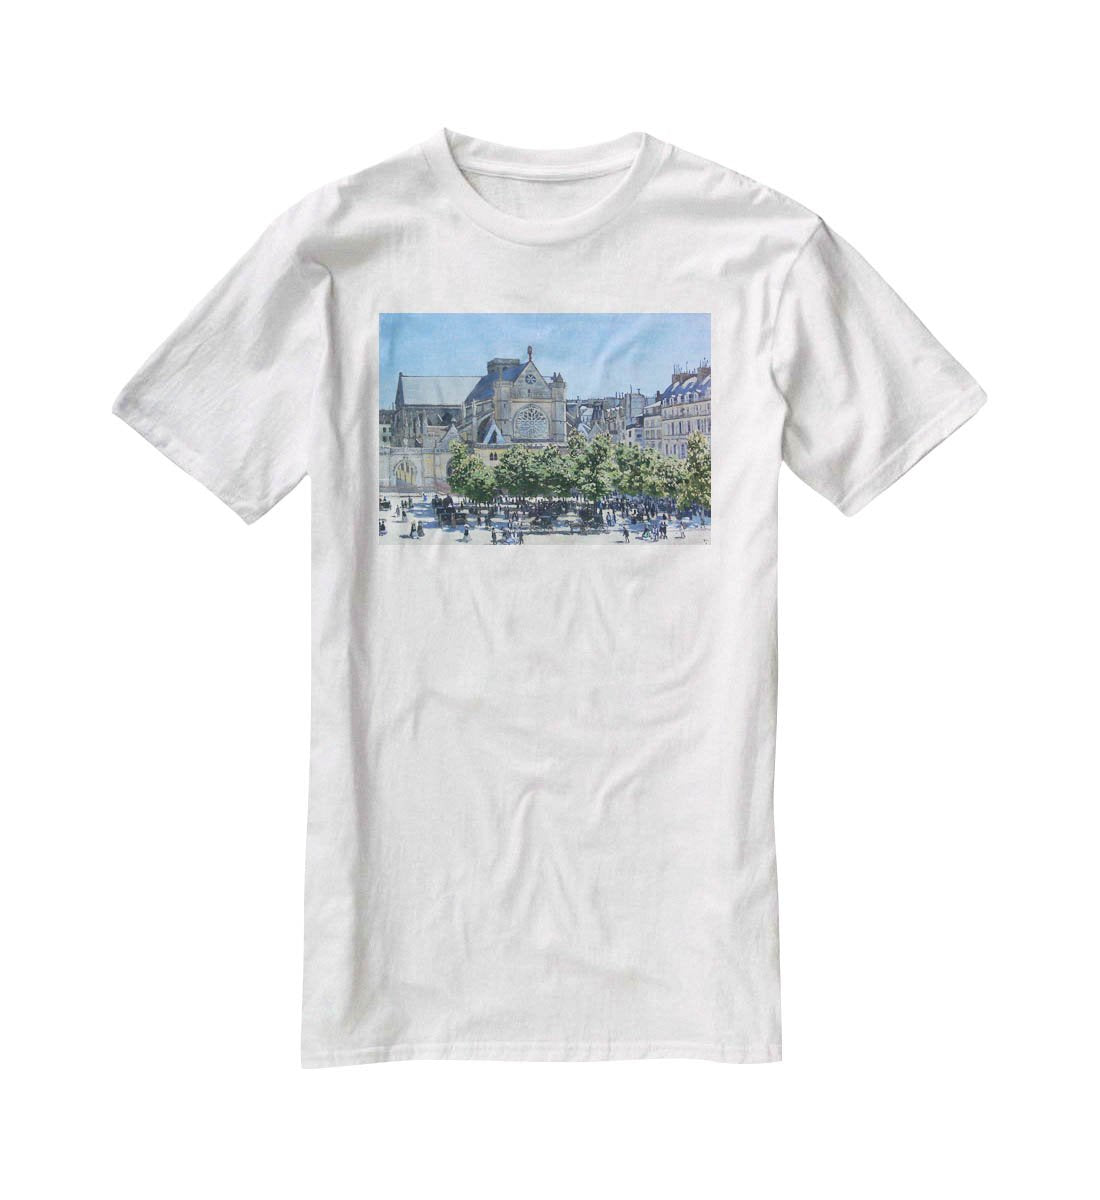 Saint Germain Auxerrois Paris 1867 by Monet T-Shirt - Canvas Art Rocks - 5